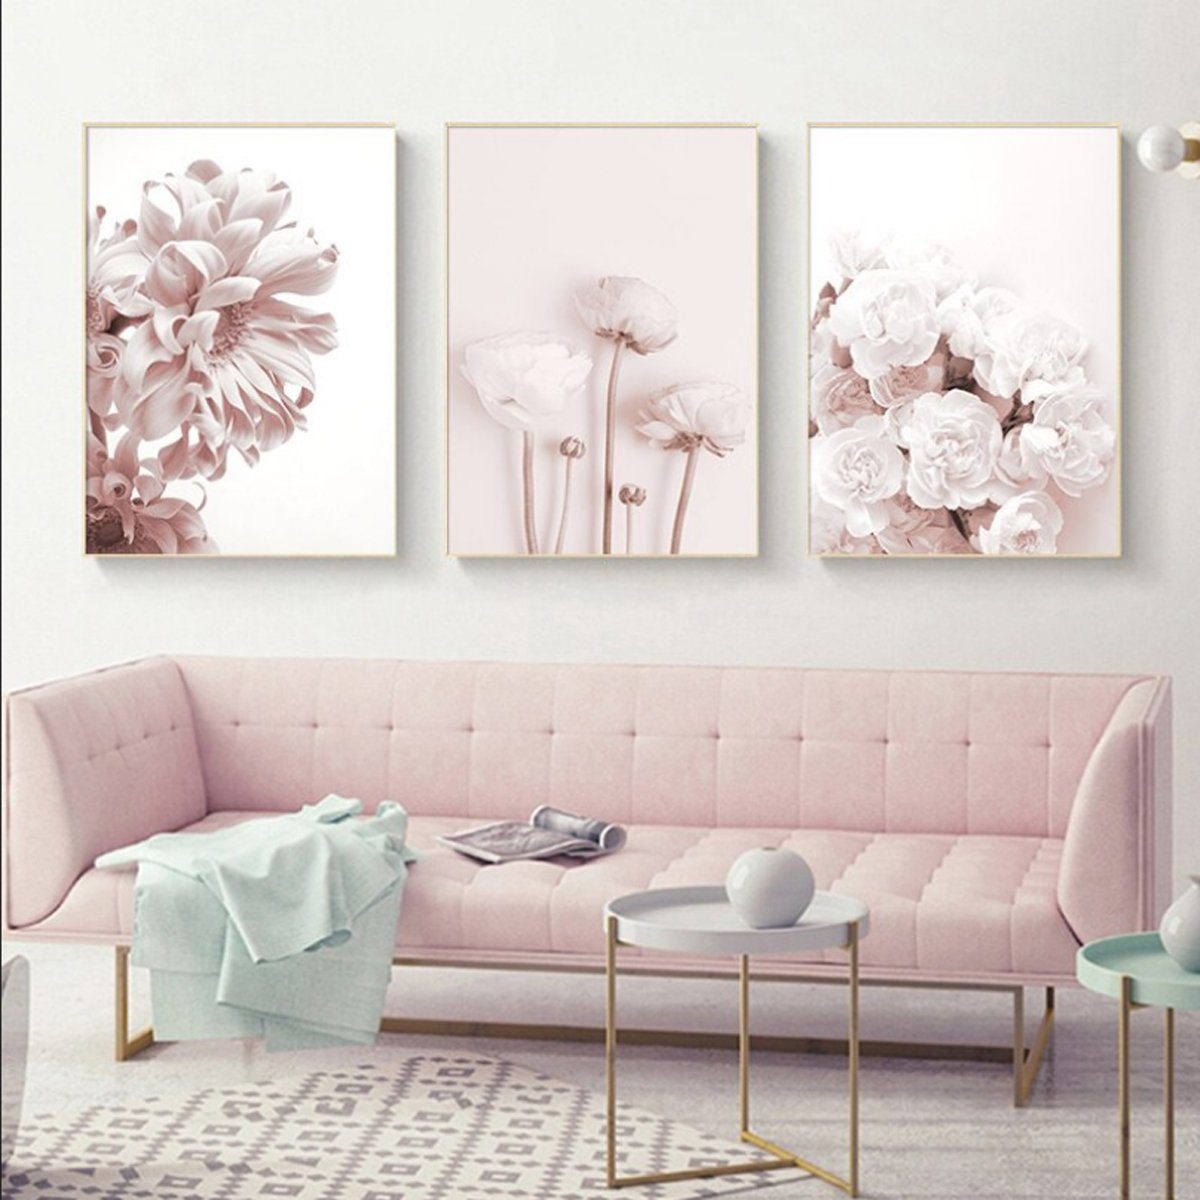 TPFLiving Kunstdruck (OHNE RAHMEN) Poster - Leinwand - Wandbild, Rosa Blumen und Blüten - Wanddeko Wohnzimmer - (13 verschiedene Größen zur Auswahl - Auch im günstigen 3-er Set), Farben: Pink und Weiß - Größe: 25x35cm